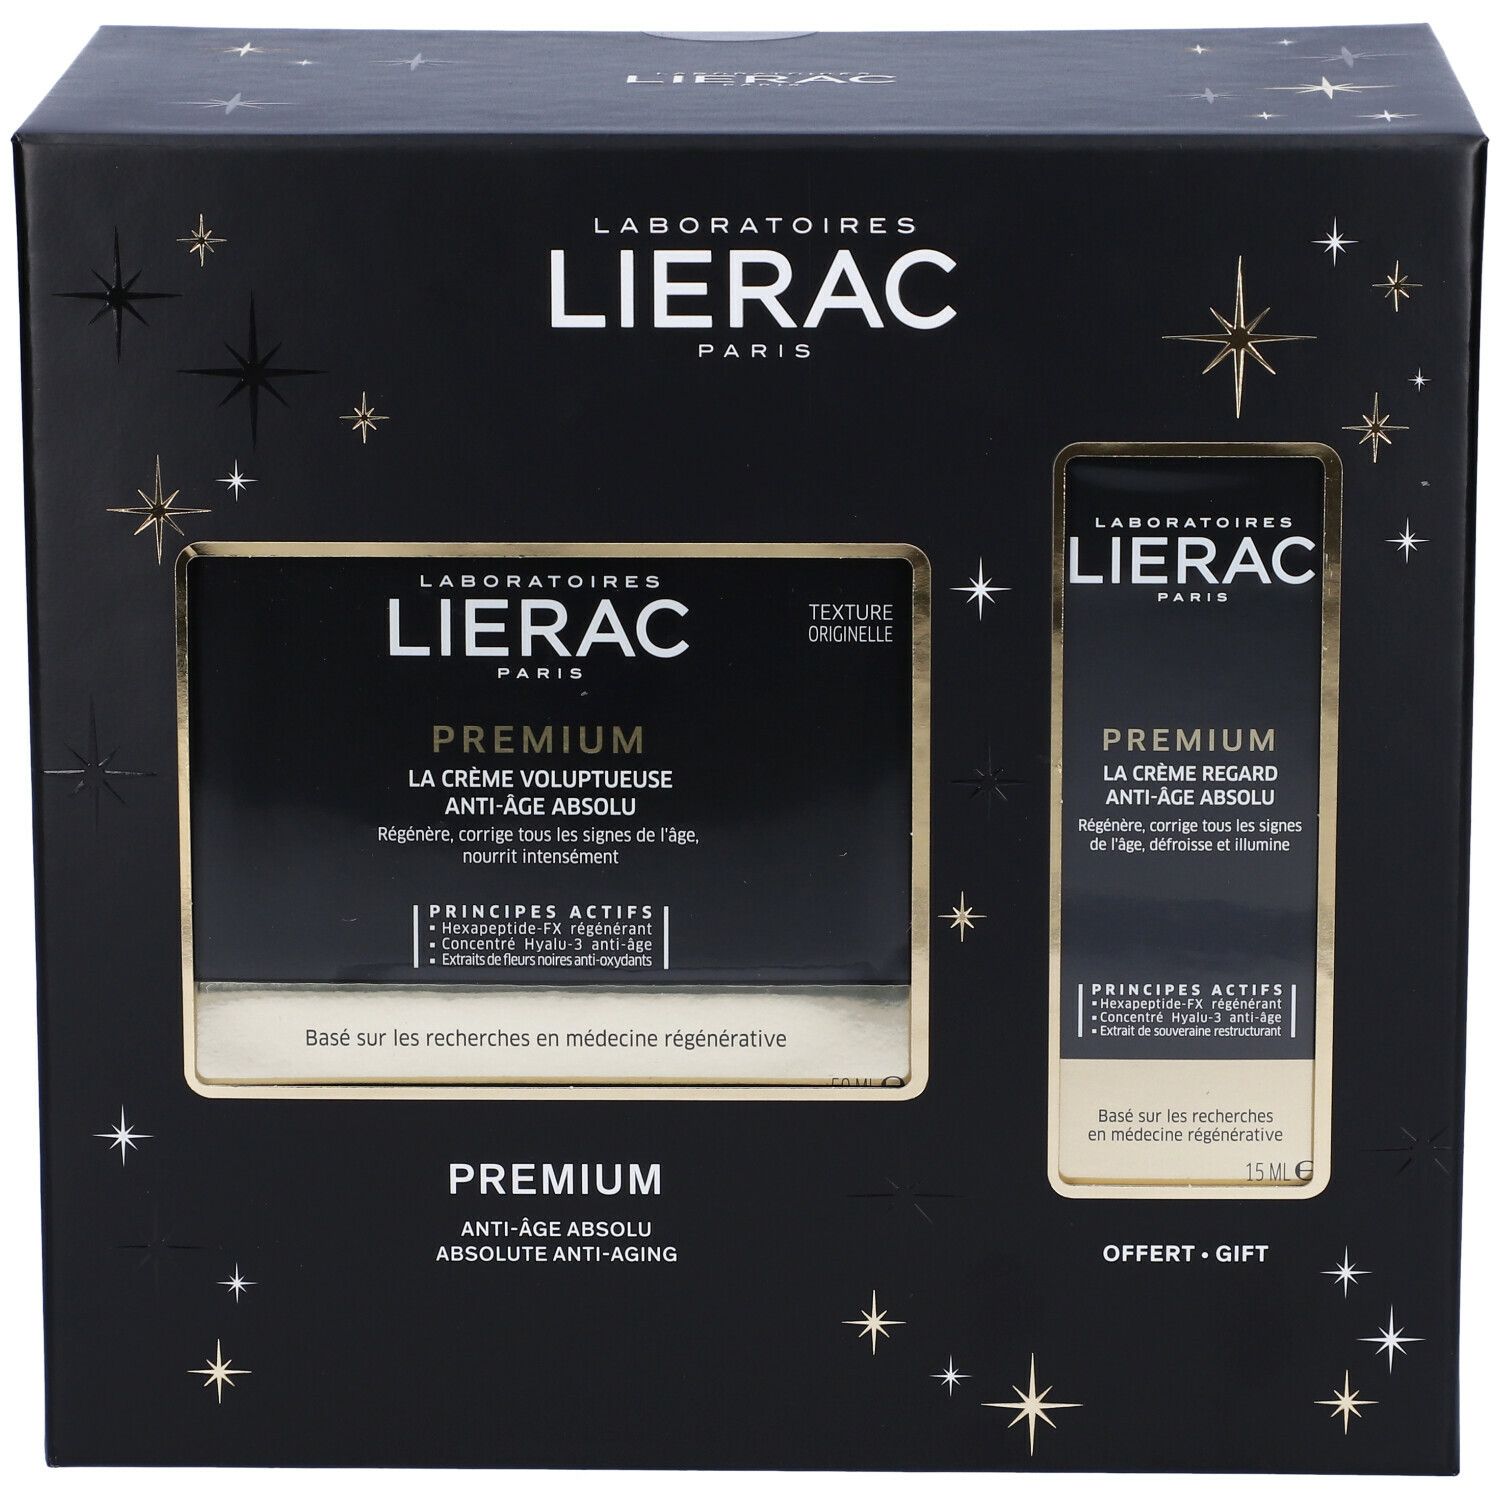 Lierac Coffret Premium Voluptuous Cream + Eyes Offered